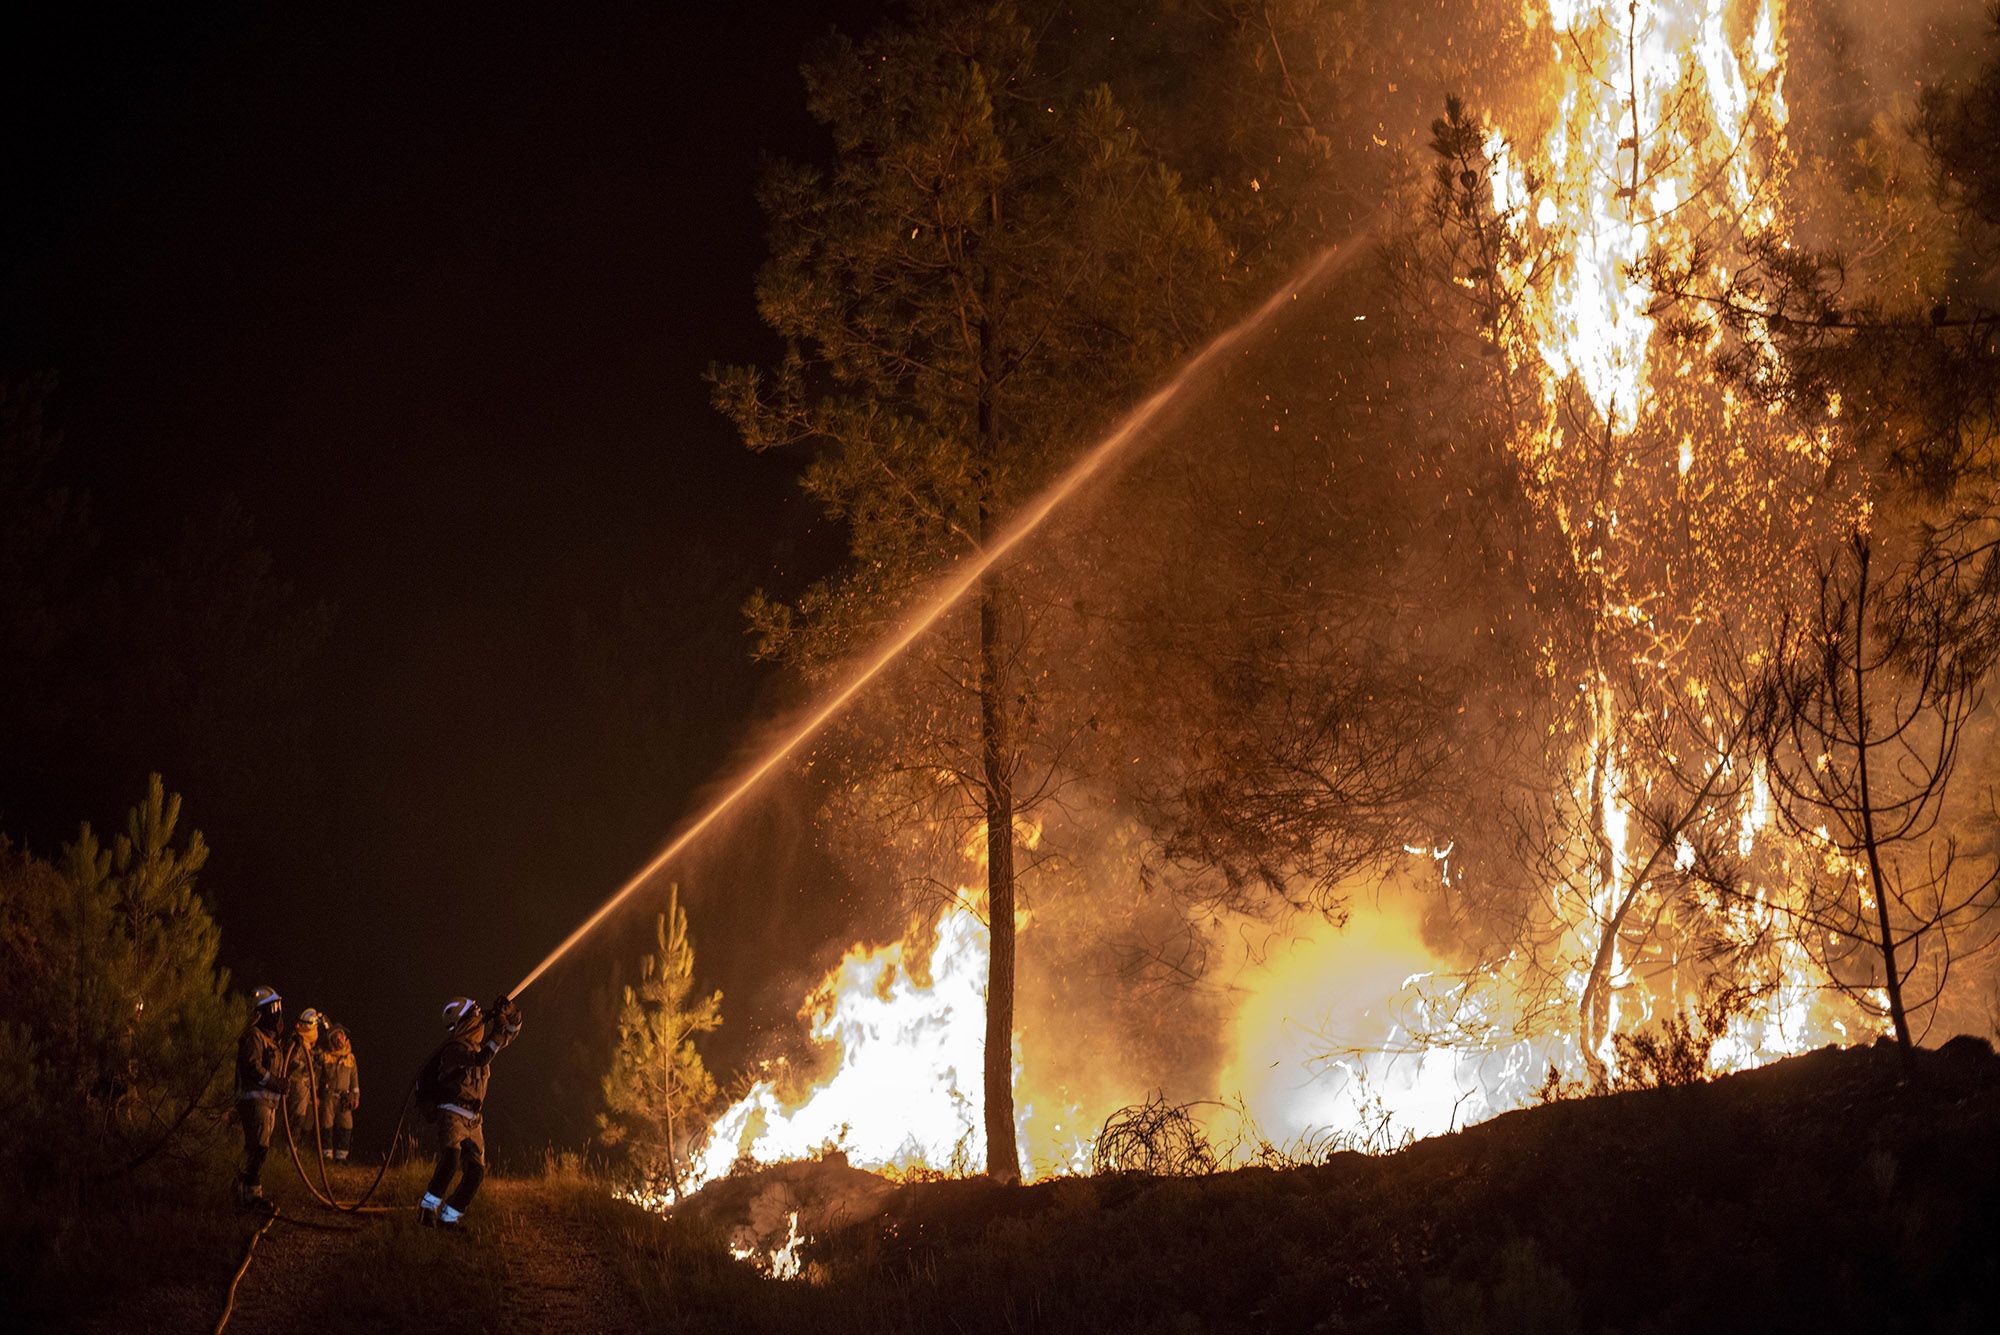 El incendio tuvo en vilo a los vecinos, arrasó al menos 150 hectáreas y afectó a la luz y las comunicaciones.